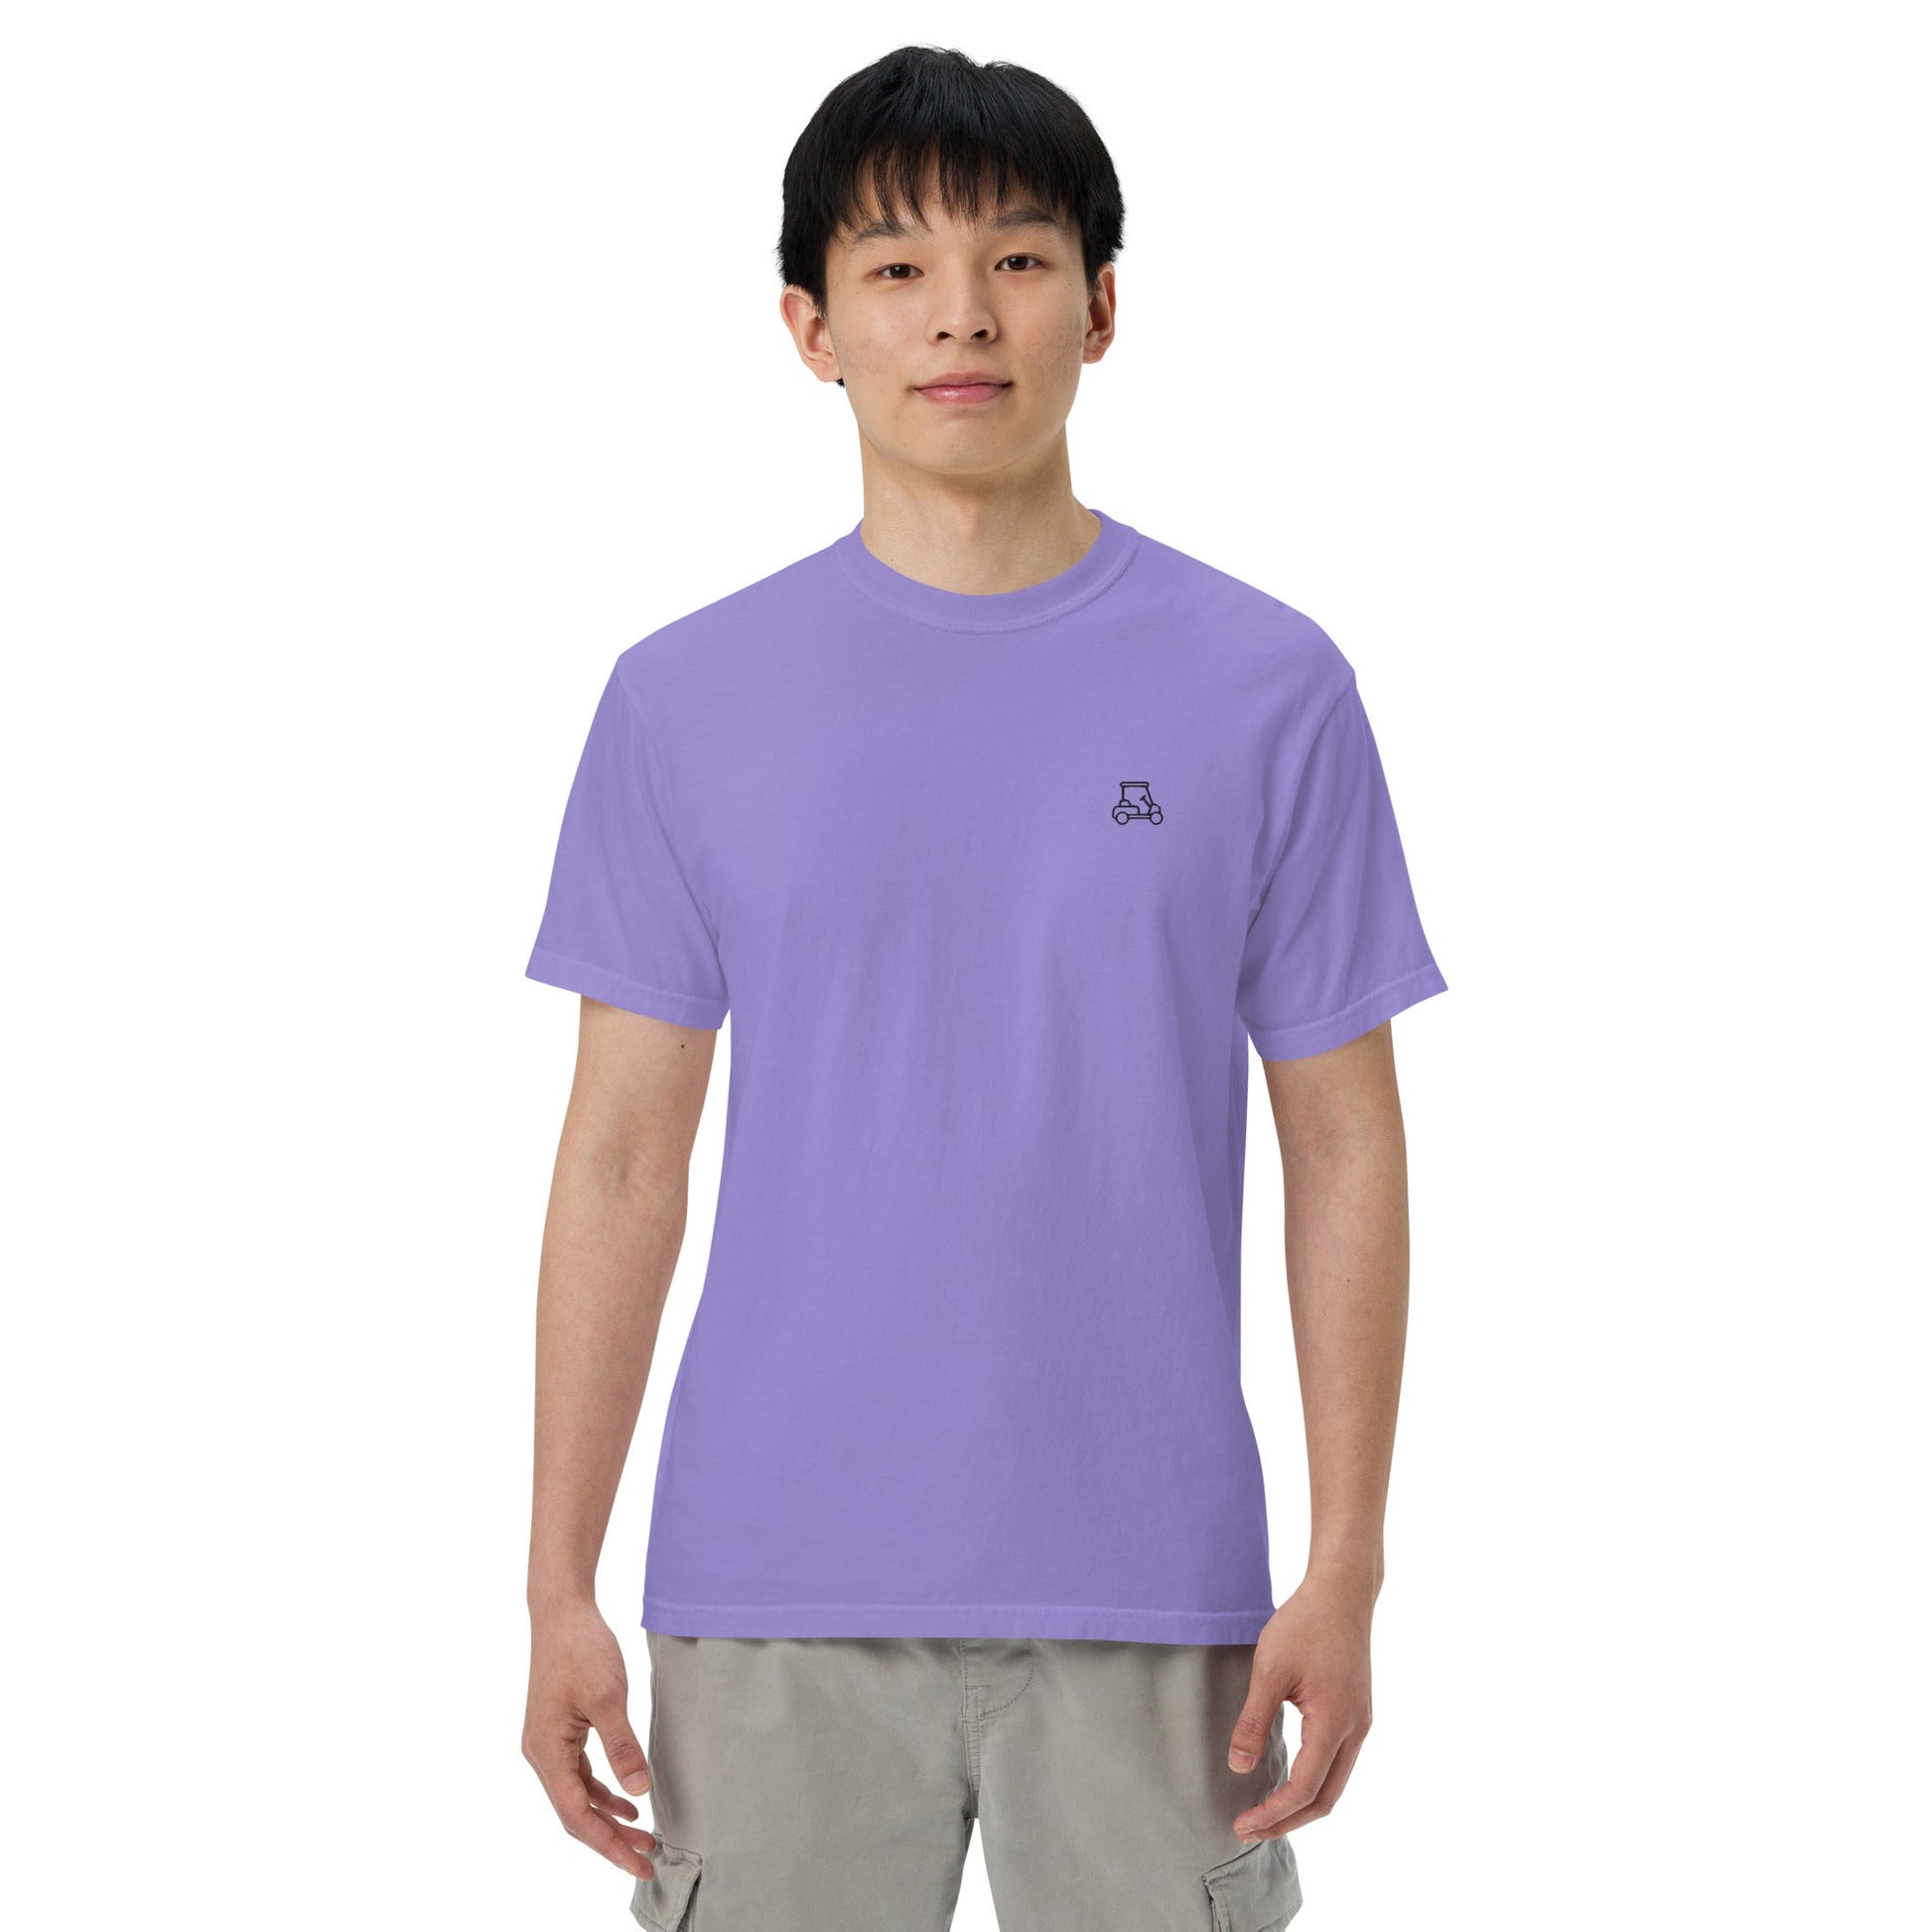 Lavender Caddy's Heavyweight T-shirt-Caddy Golf